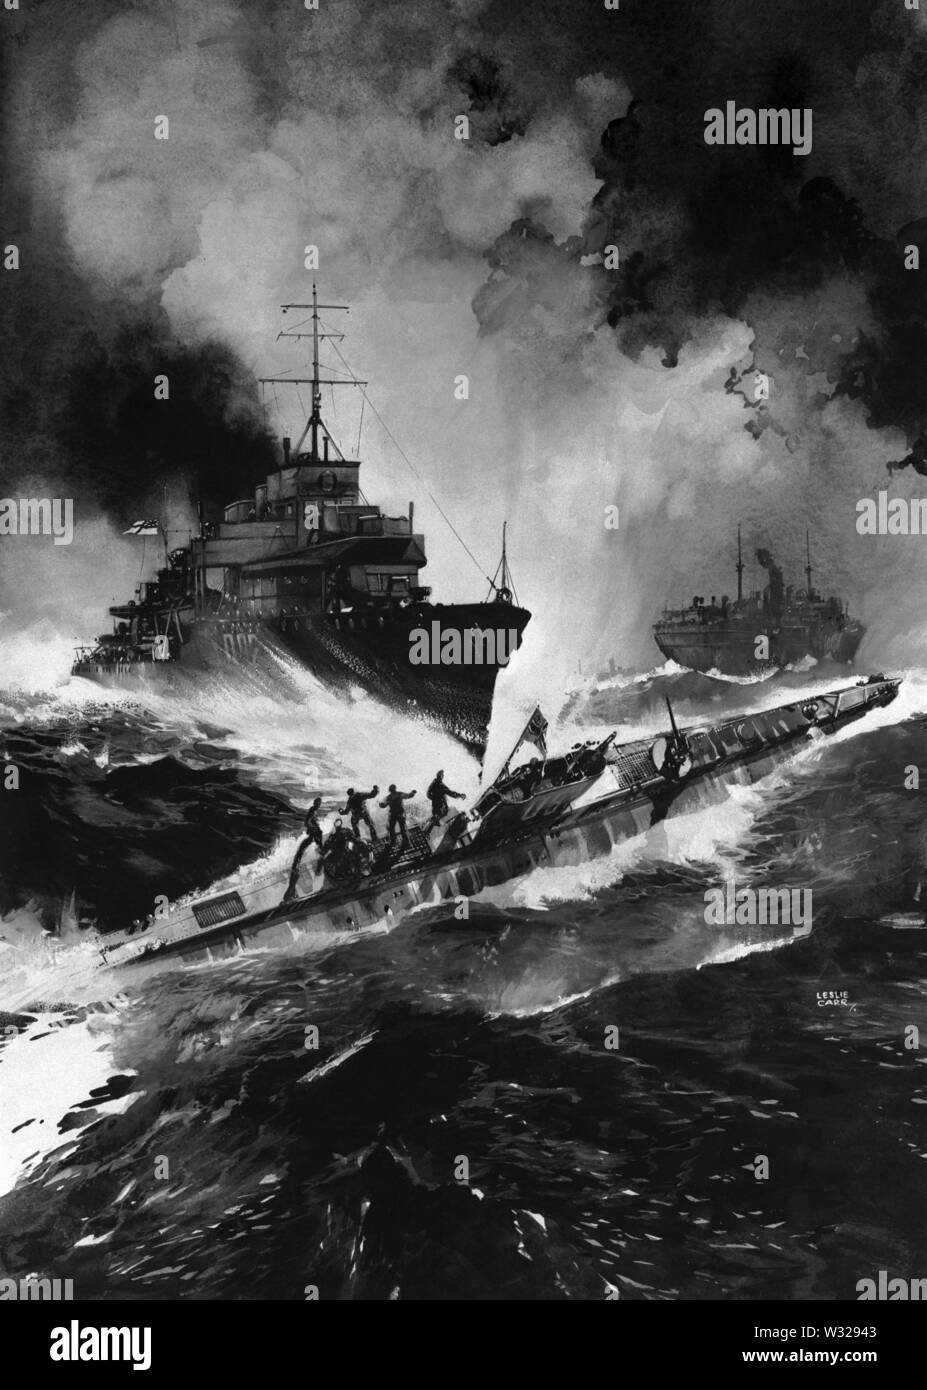 AJAXNETPHOTO. 1918. NORTH ATLANTIC OCEAN. - U-Boot zu sinken - eine dramatische DARSTELLUNG VON DER KÜNSTLERIN LESLIE CARR ZEIGT DIE Zerstörer HMS VISCOUNT (D92) GERAMMT UND sinkt das U-Boot U 87. VISCOUNT WAR EIN V-KLASSE ADMIRALTY DESIGN gebaut von J.I. Bei THORNYCROFT WOOLSTON UND BEAUFTRAGTE IM MÄRZ 1918. Im U-Boot versenkt WURDE ANGEBLICH VON DER ZERSTÖRER WASSERBOMBEN der Veranstaltung. VISCOUNT GERAMMT UND VERSENKT zwei weitere deutsche U-Boote IN AKTIONEN IM ZWEITEN WELTKRIEG FOTO: VT-SAMMLUNG/AJAX REF: VT 9840 Stockfoto